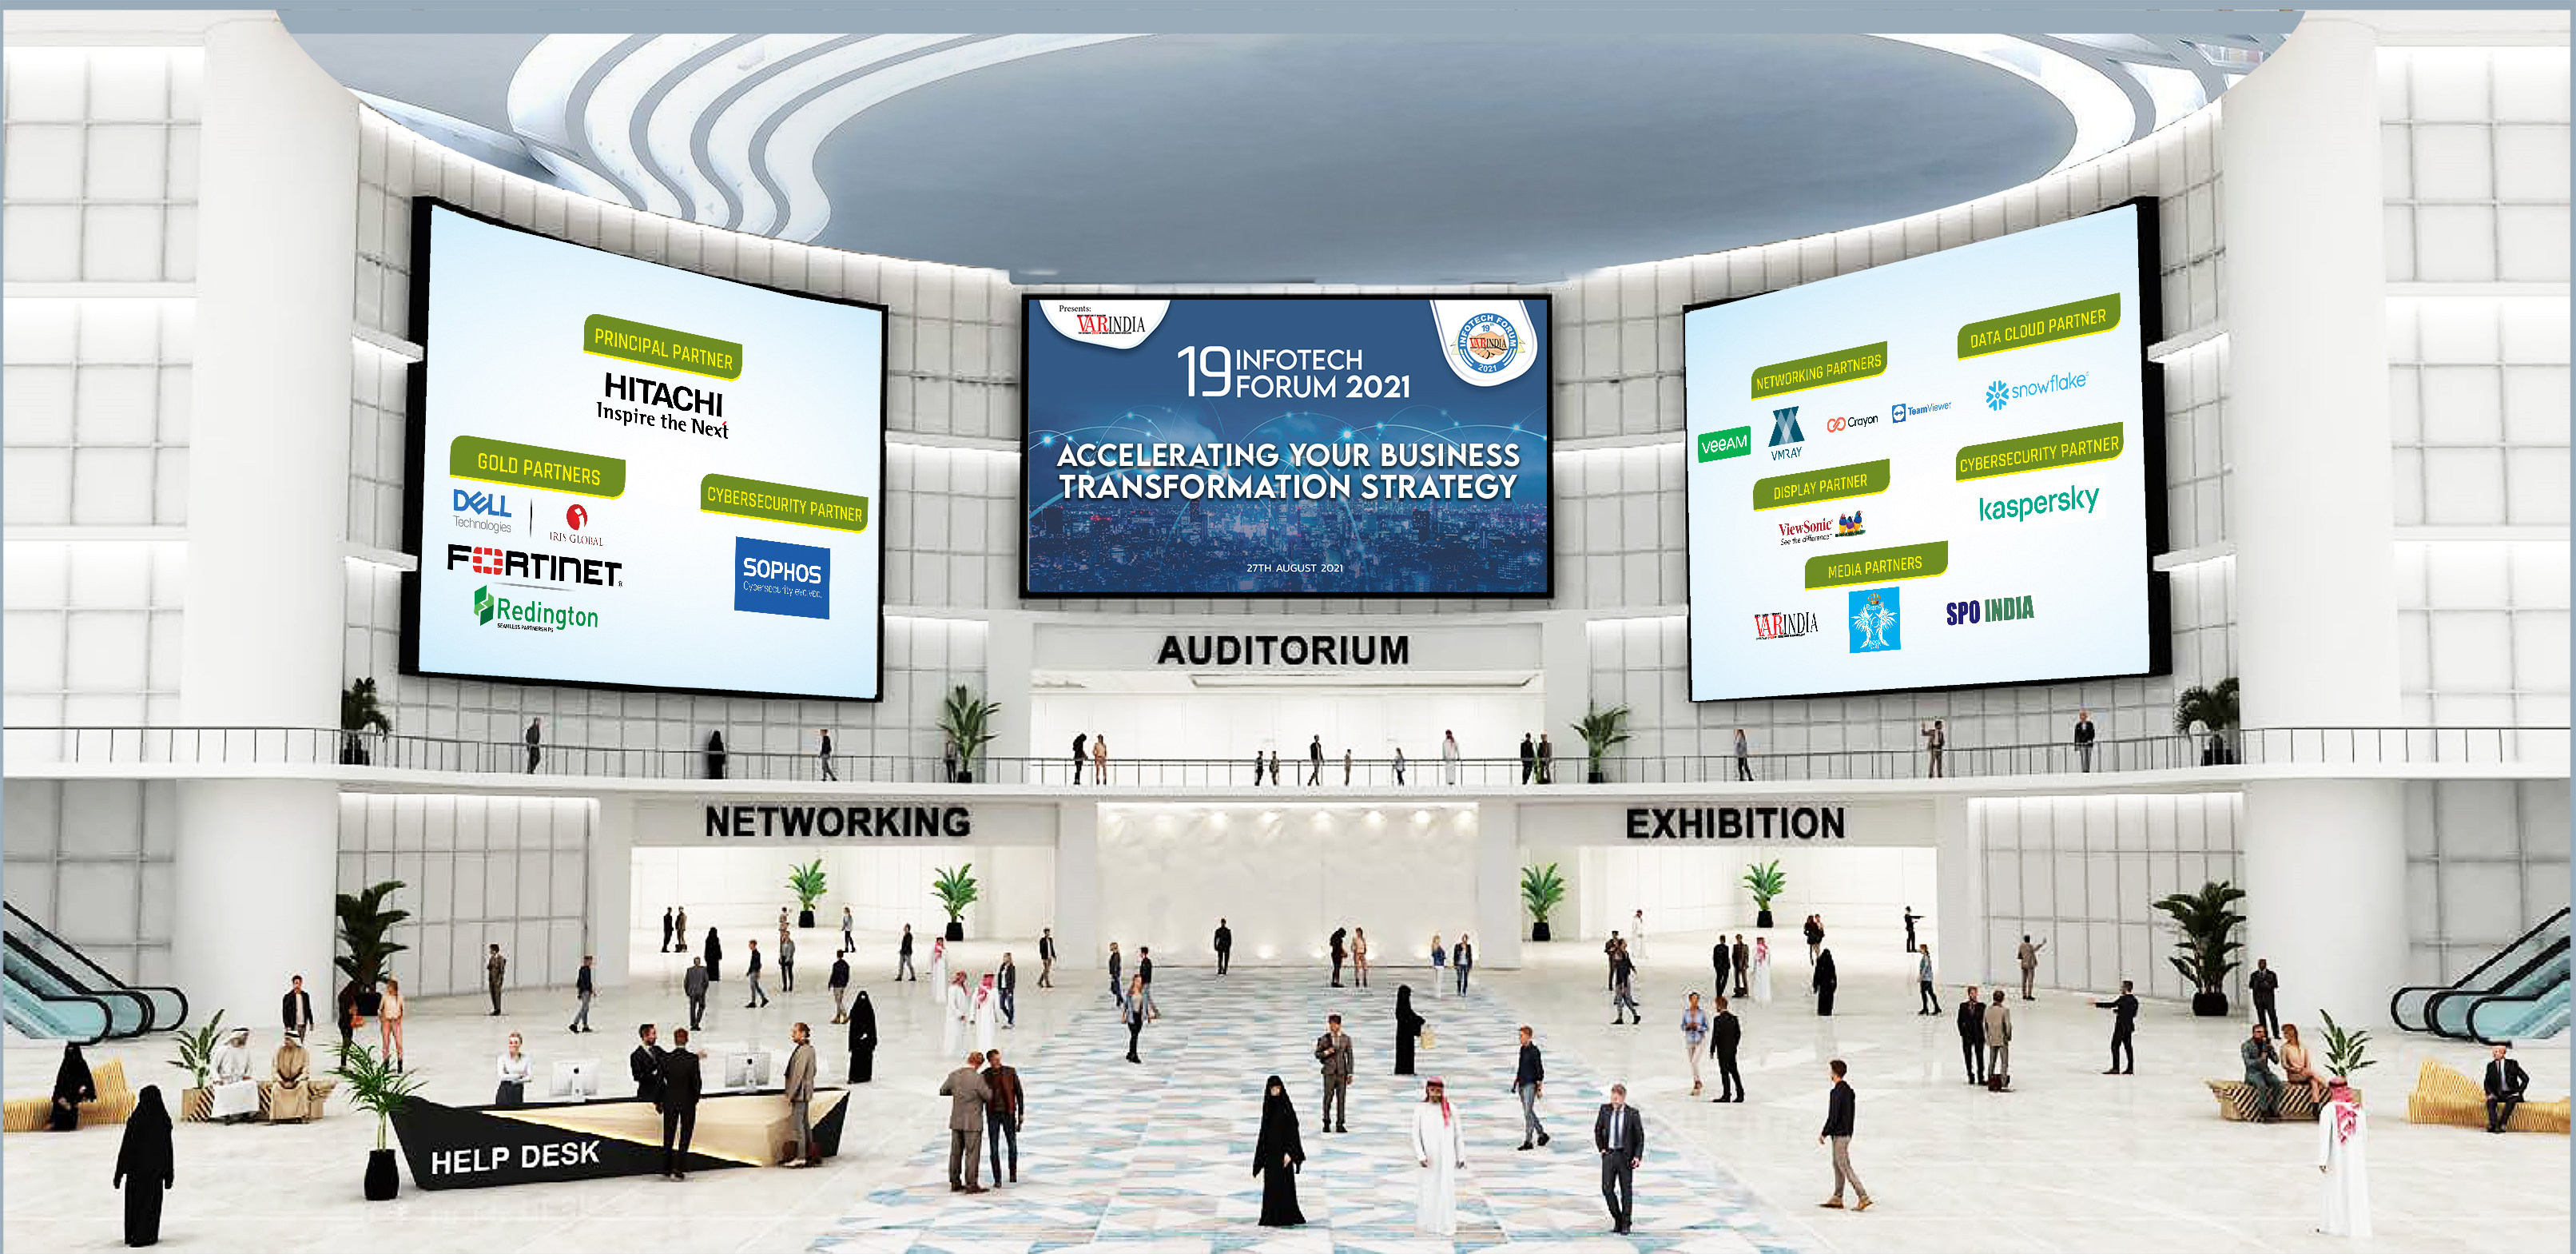 Auditorium - Infotech Forum 2021